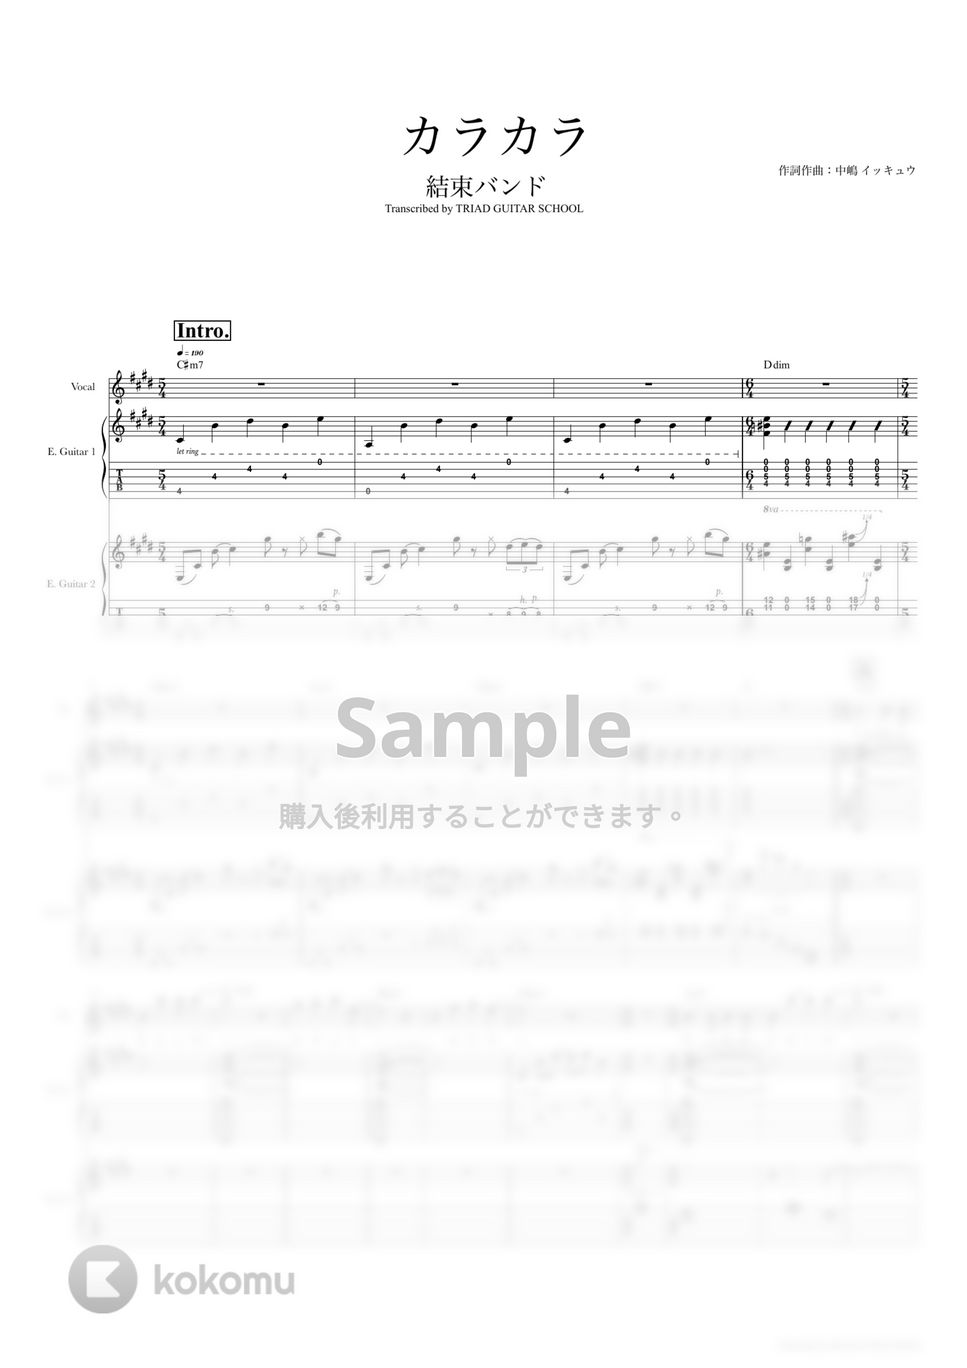 結束バンド - カラカラ (ギタースコア・歌詞・コード付き) by TRIAD GUITAR SCHOOL